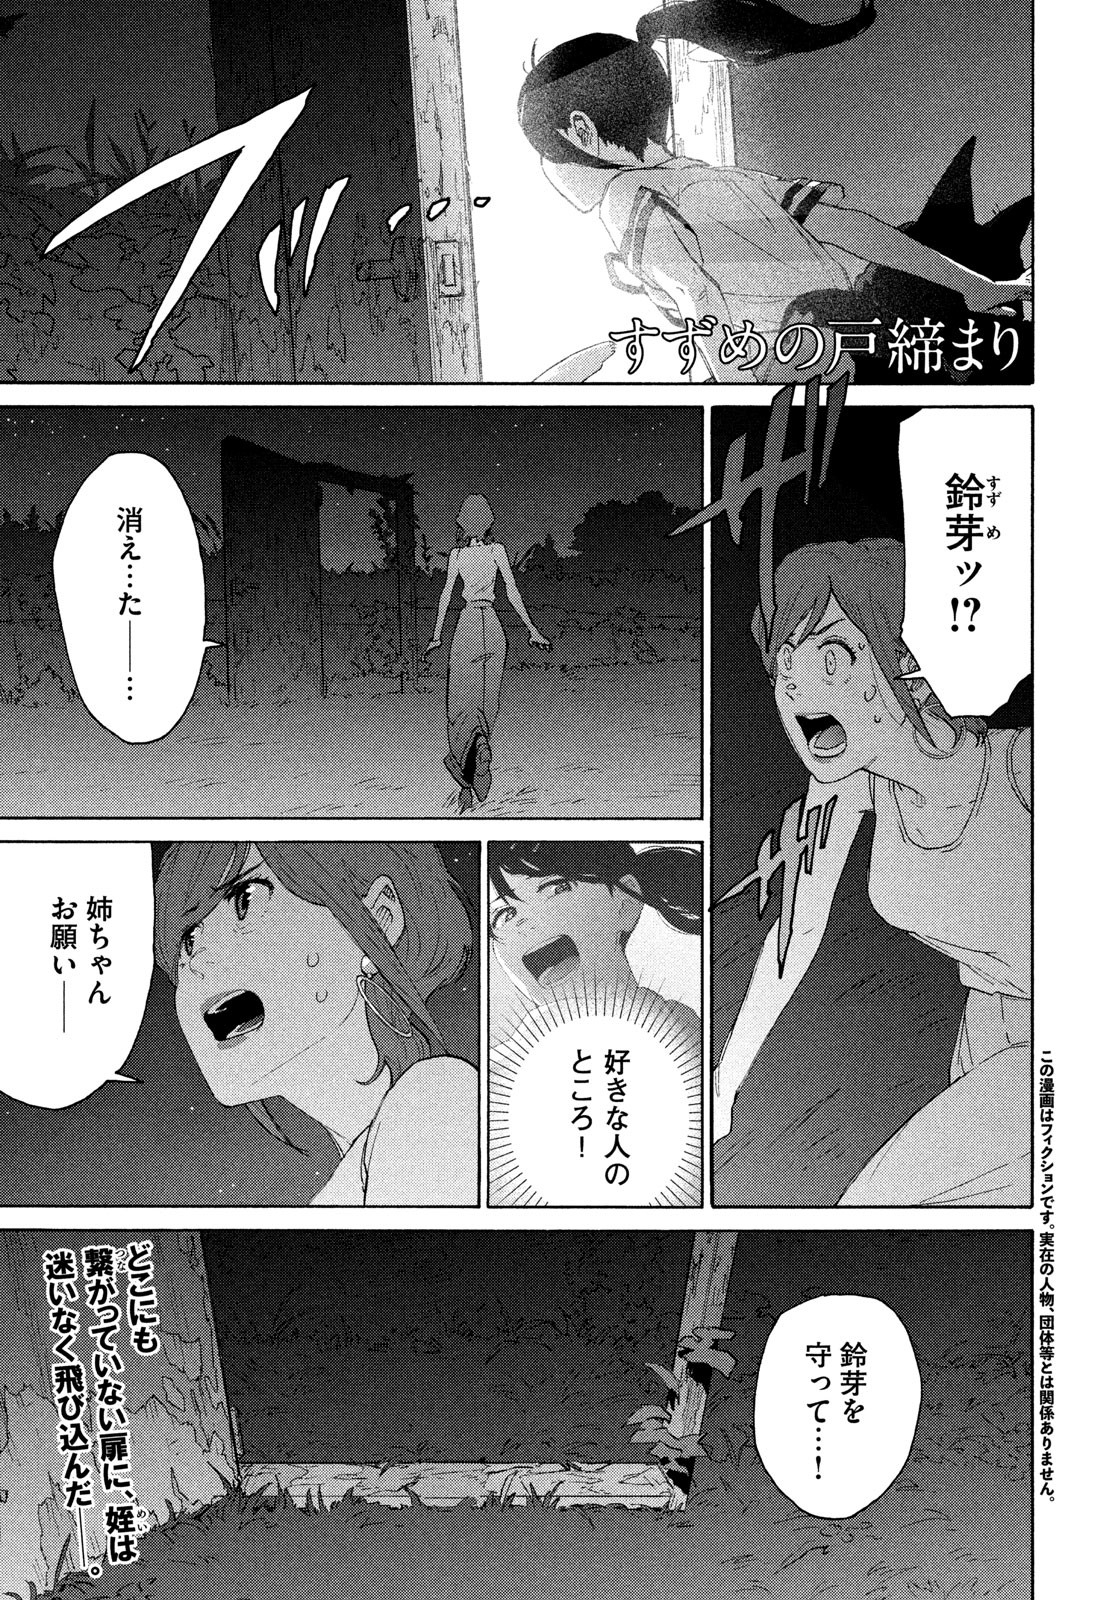 Suzume no Tojimari - Chapter 14 - Page 1